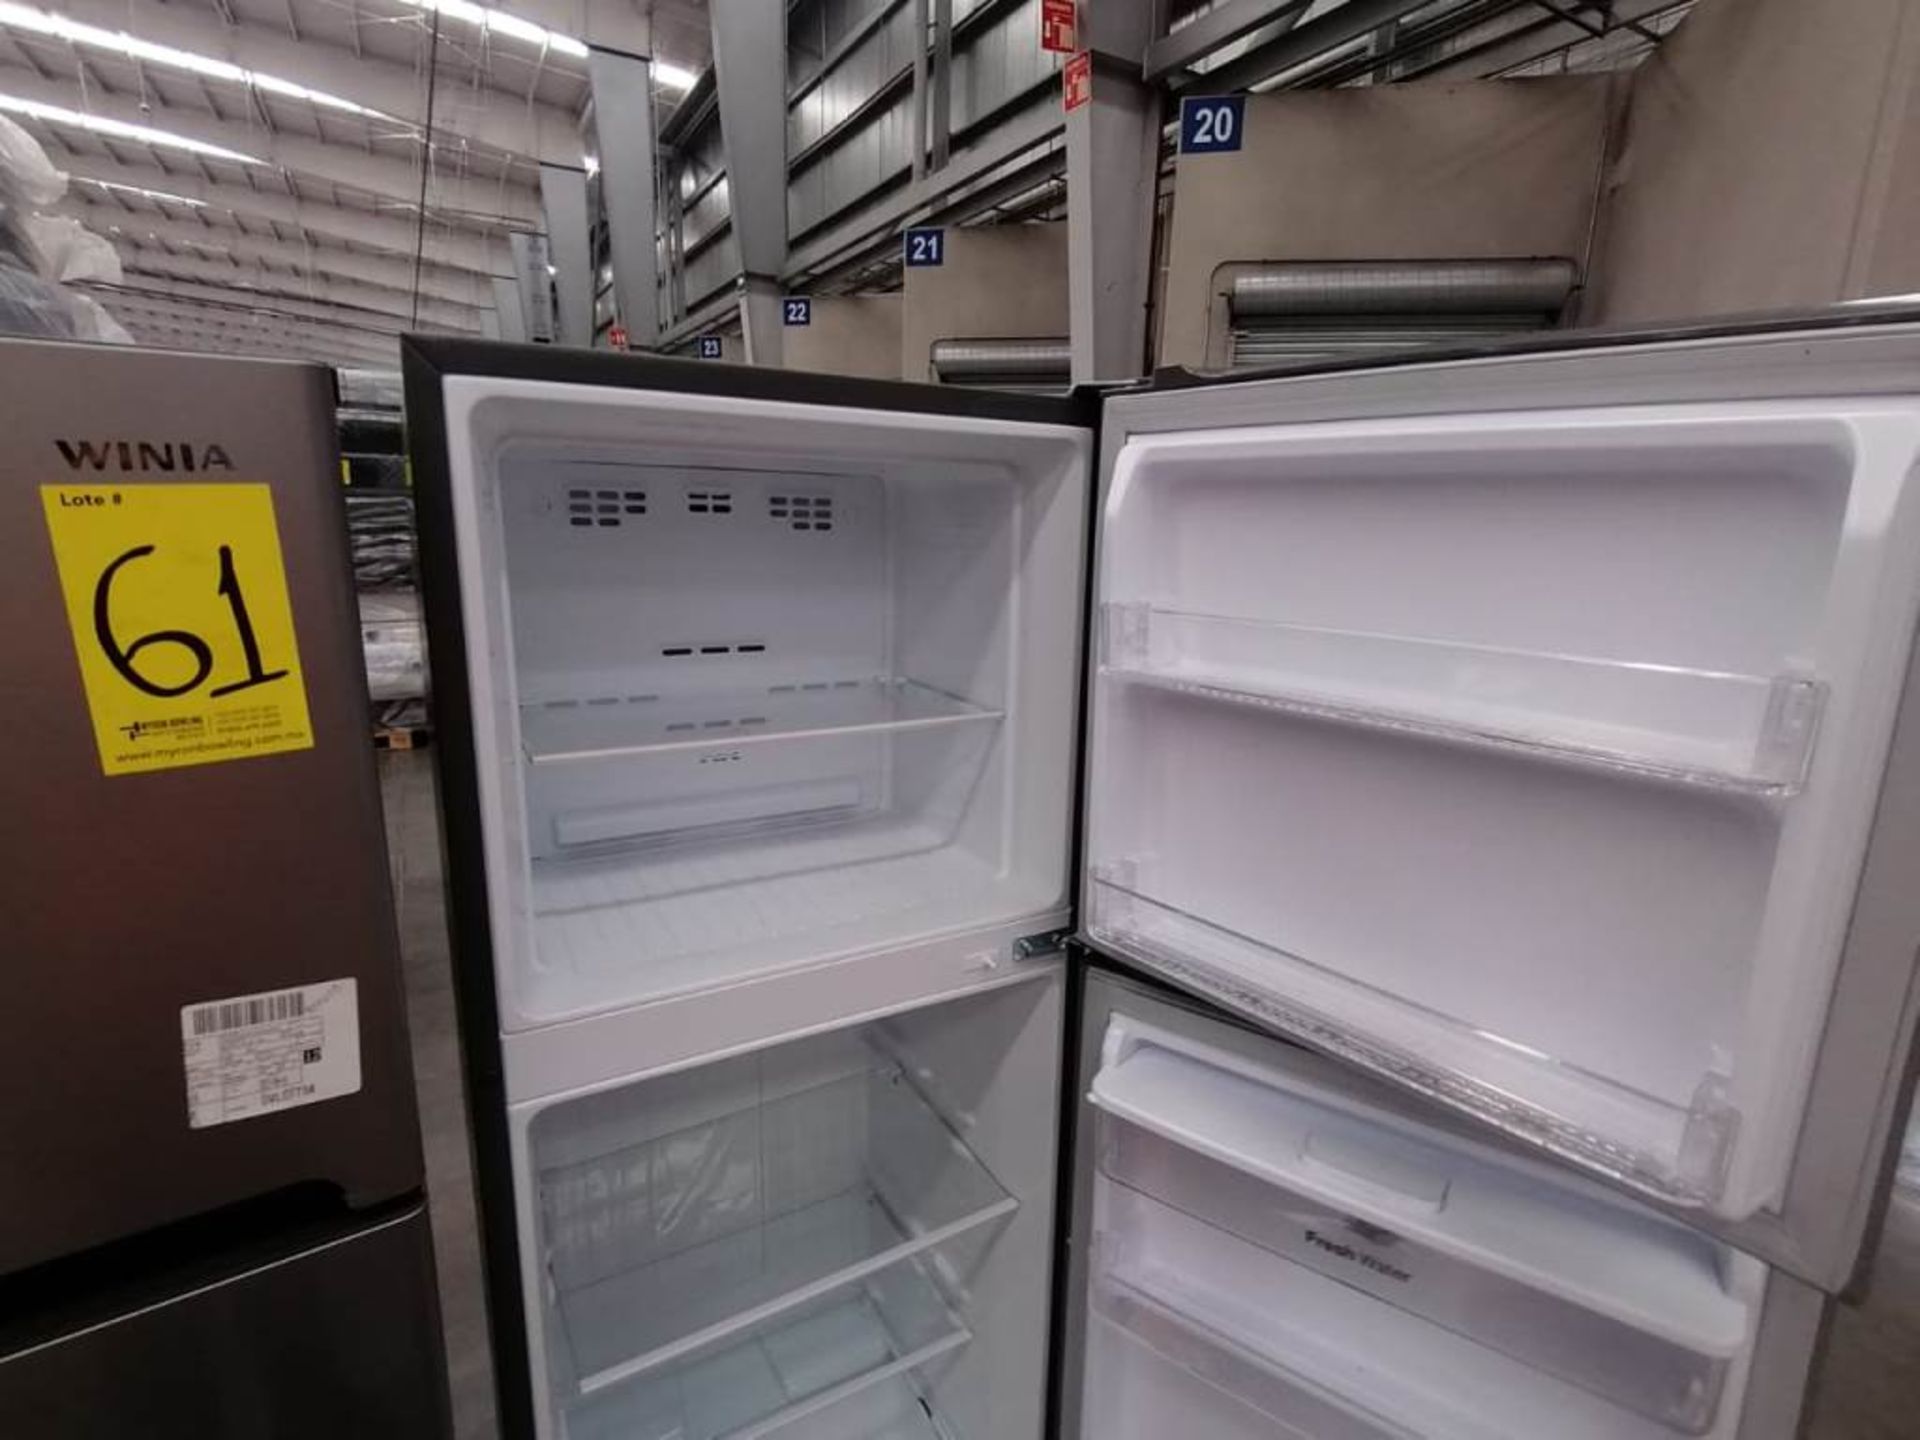 Lote de 2 Refrigeradores, Contiene 1 Refrigerador Marca Winia, Color Gris, Dos Puertas, Despachador - Image 8 of 13